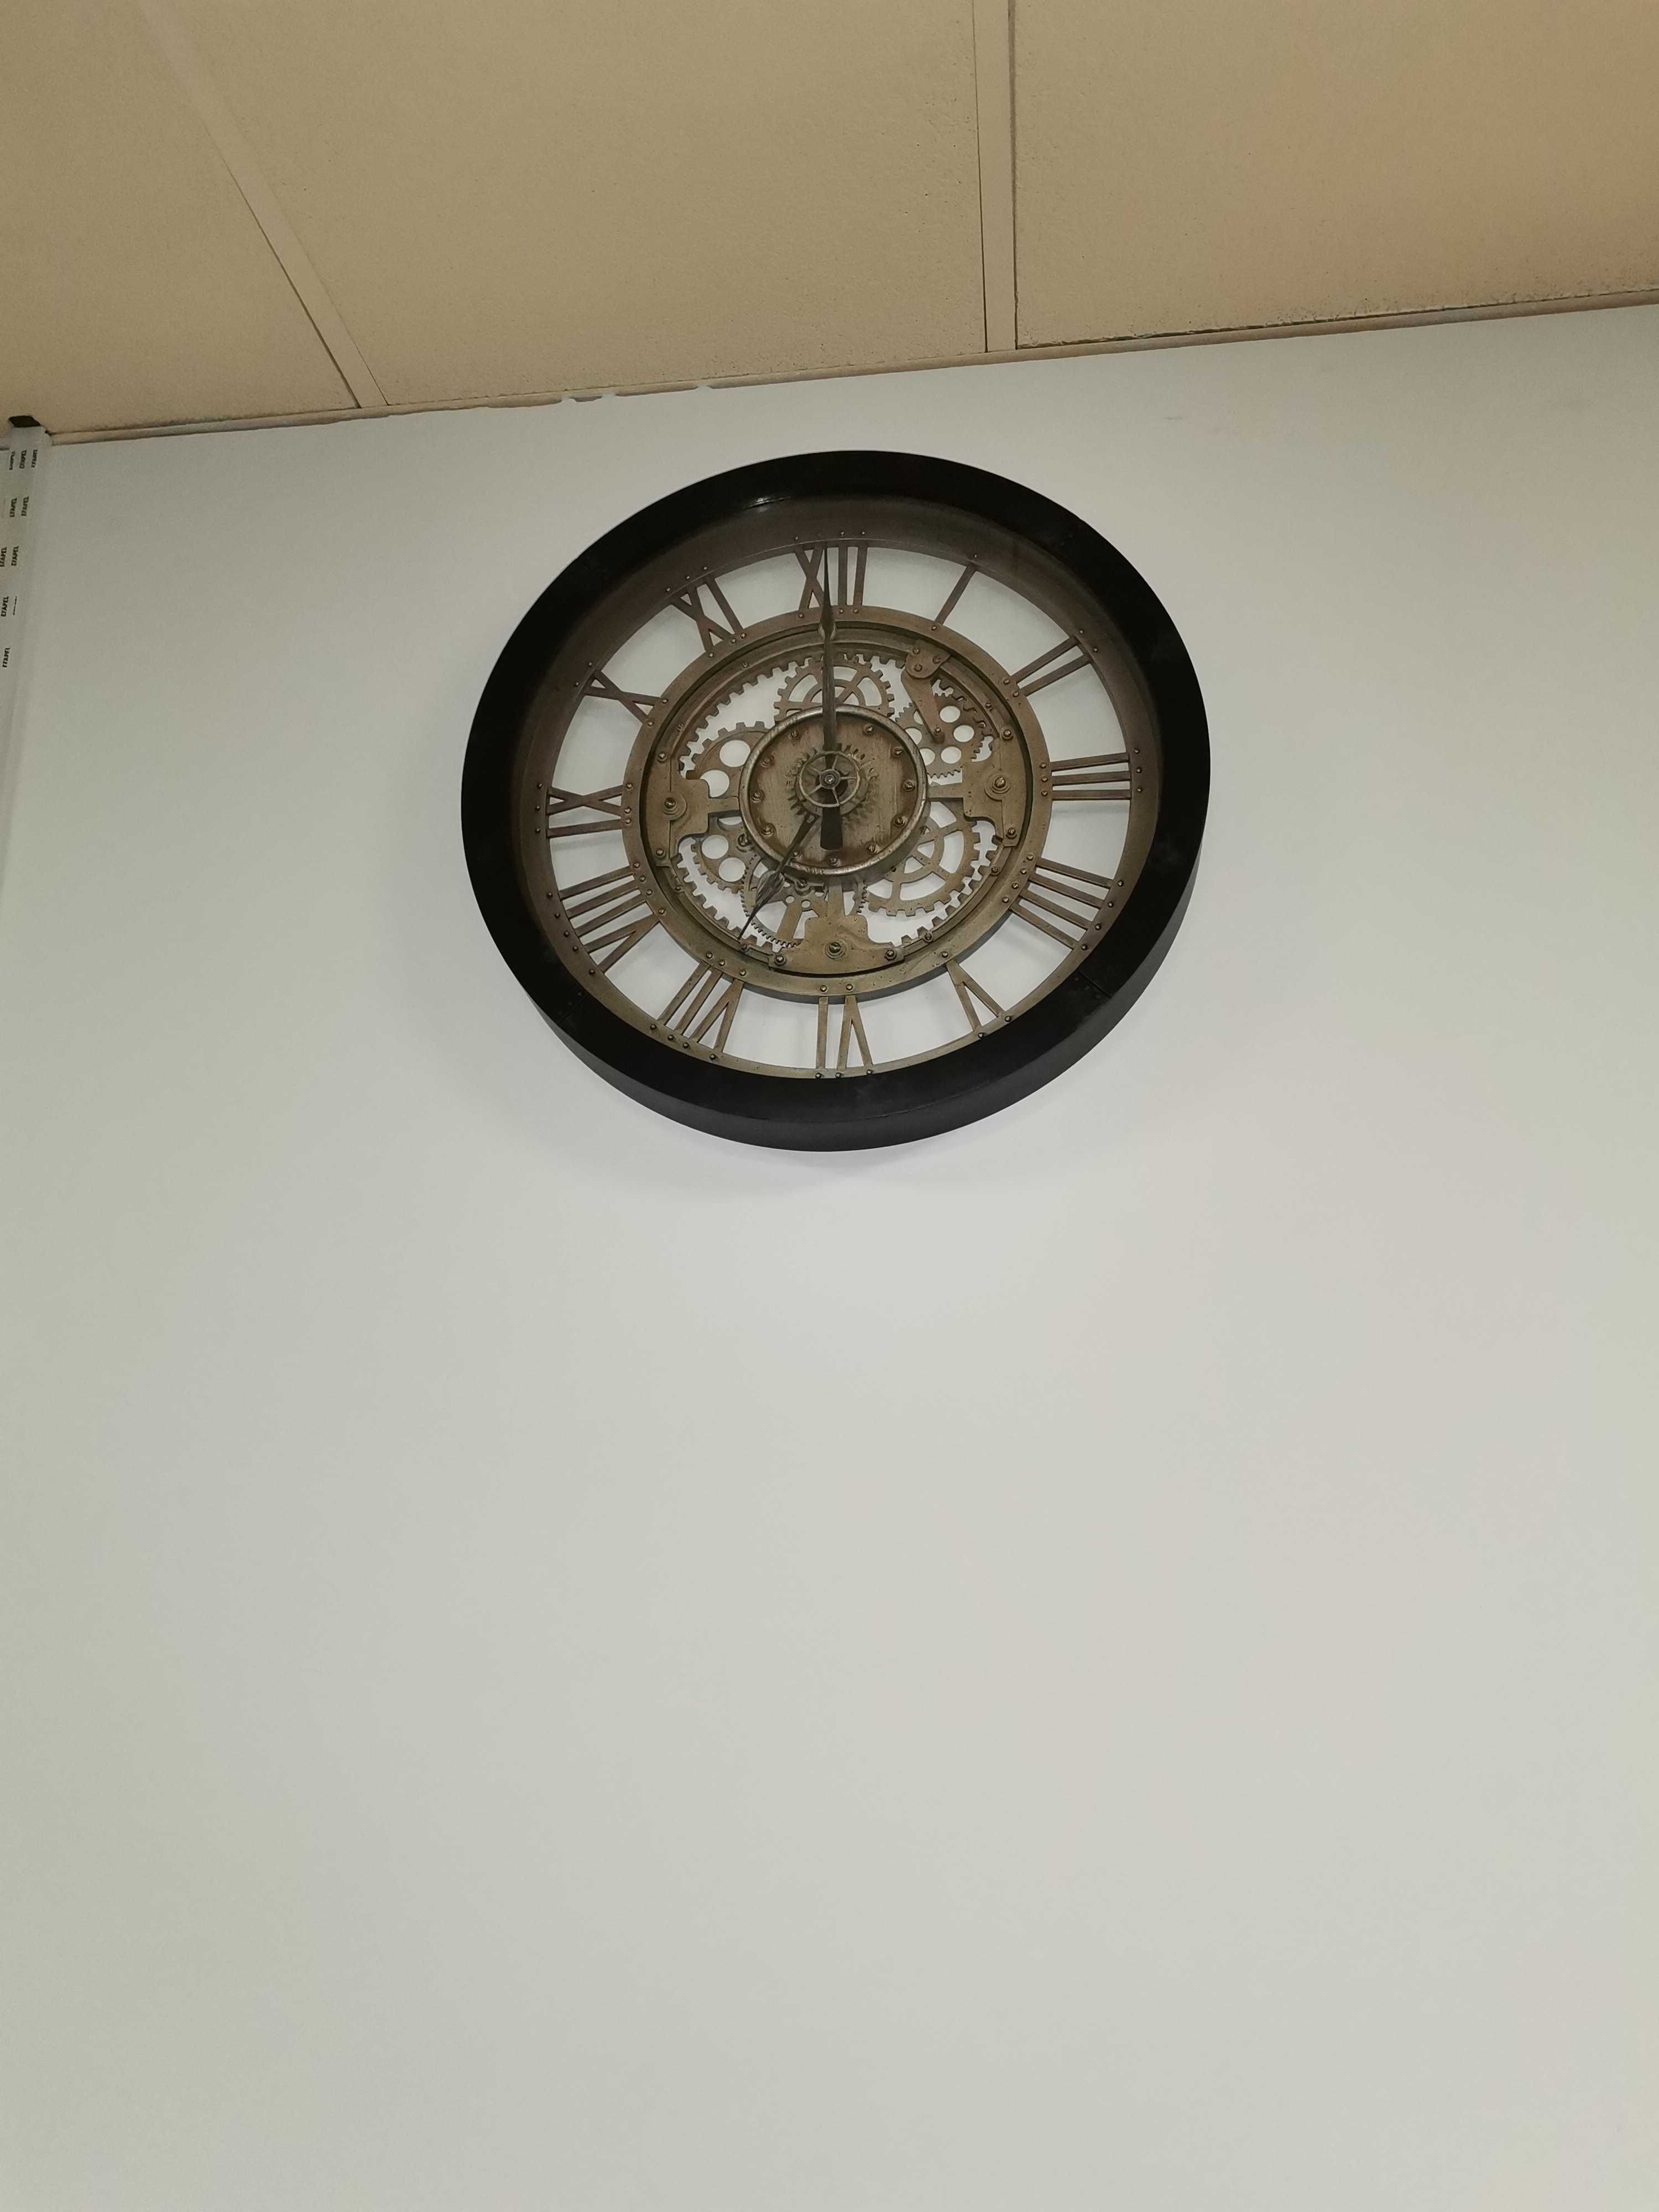 Relógio de parede novo usado menos de 2 meses